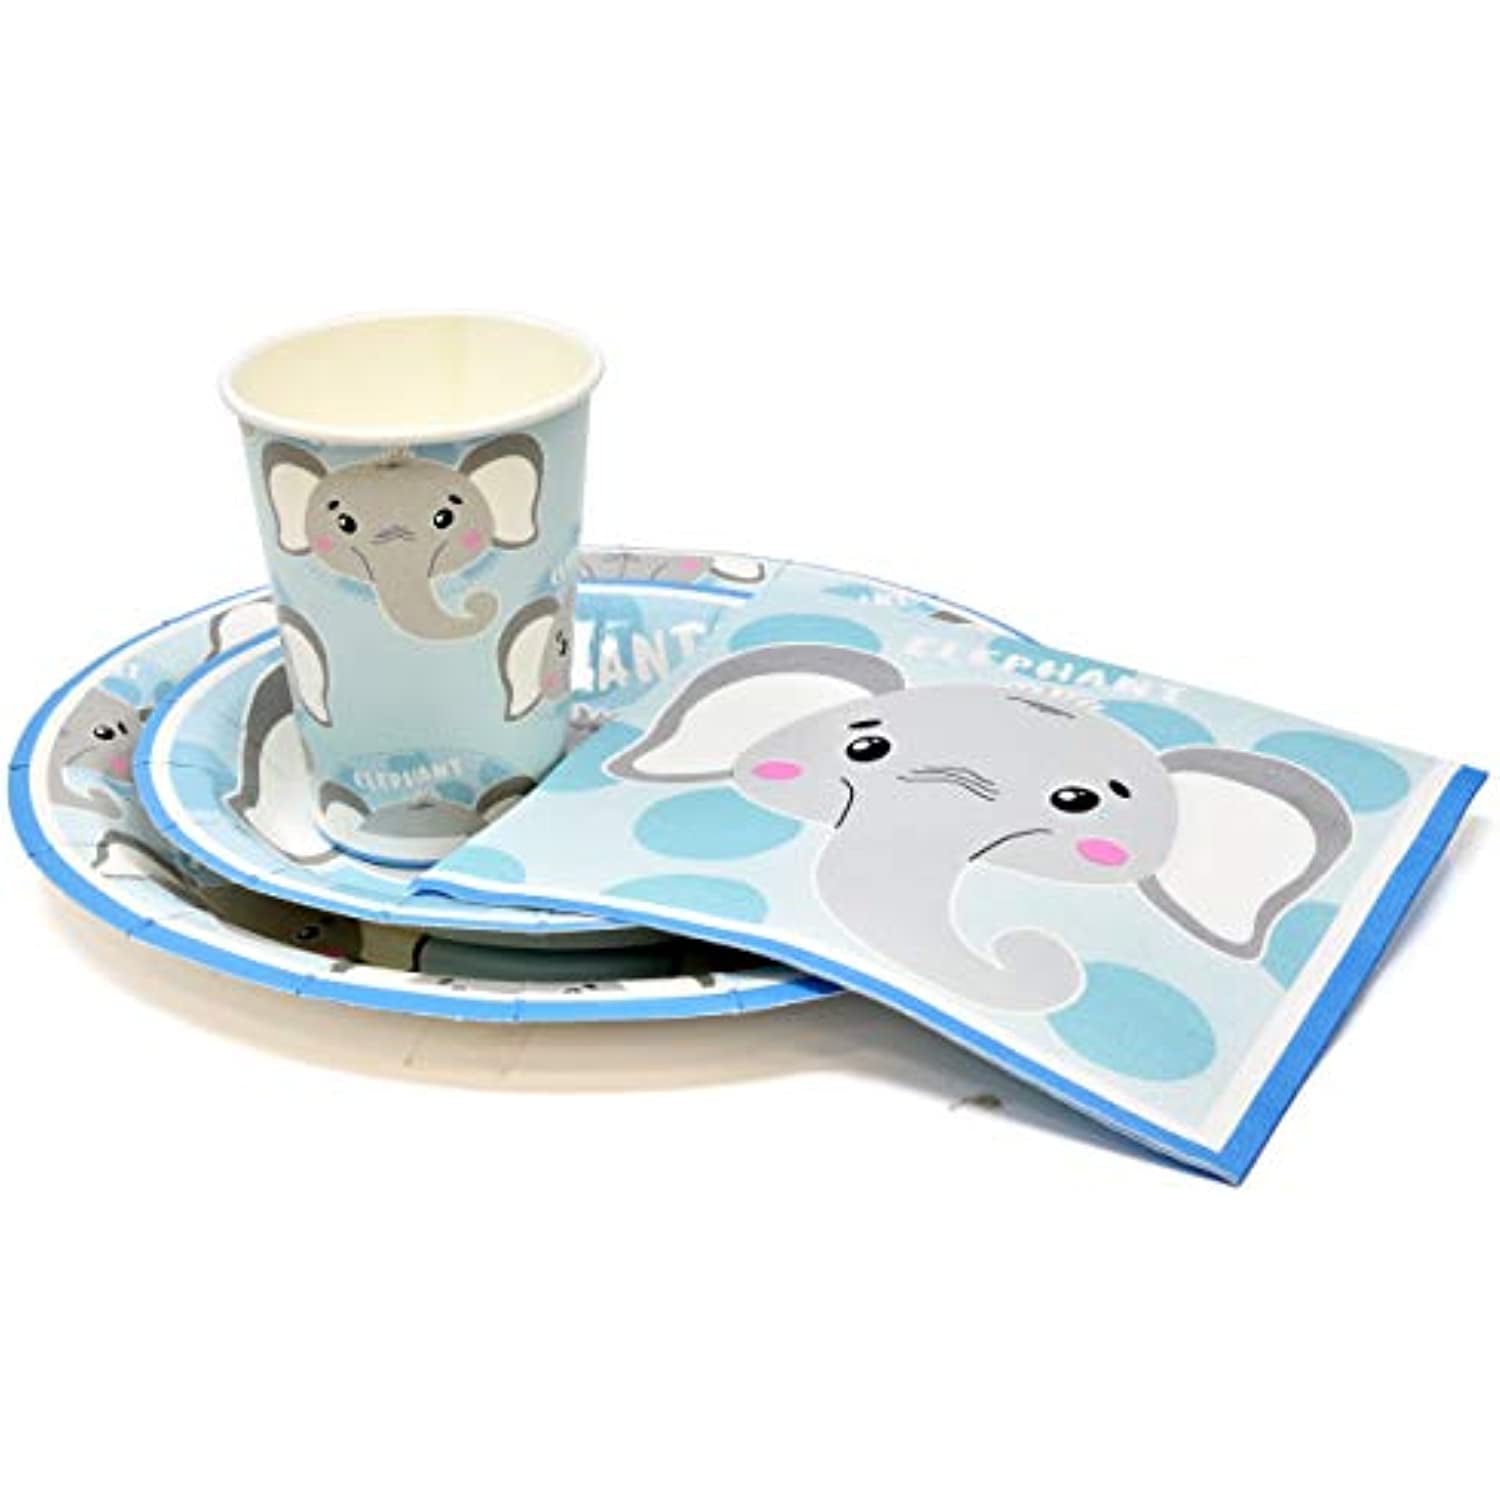 Boho elephant Washi Tape Papercraft Planner Supply Baby Shower